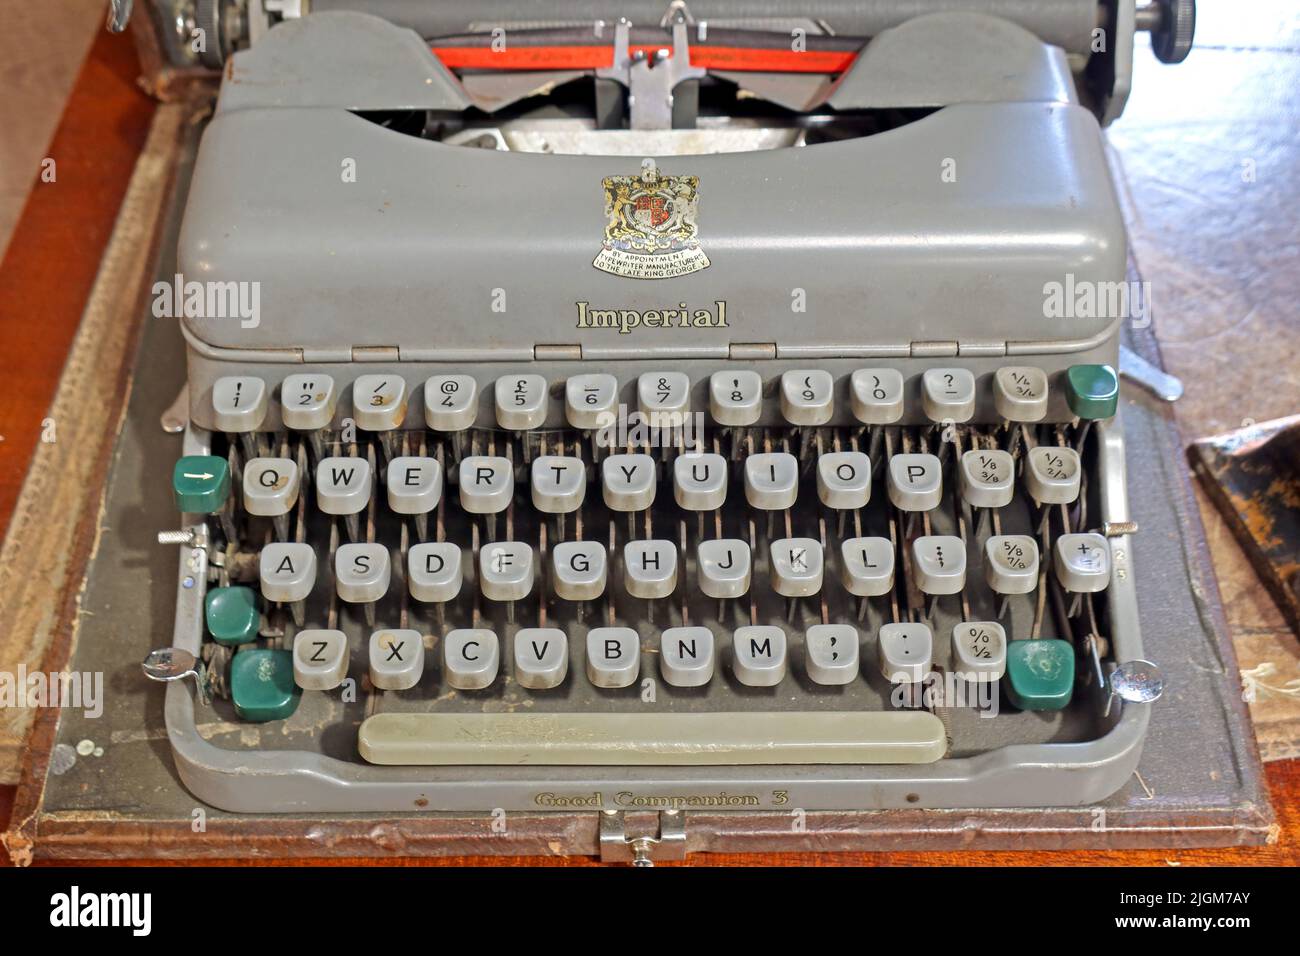 Clavier d'une machine à écrire impériale - bon companion3 sur rendez-vous Late King George, Leicester, Angleterre, Royaume-Uni Banque D'Images